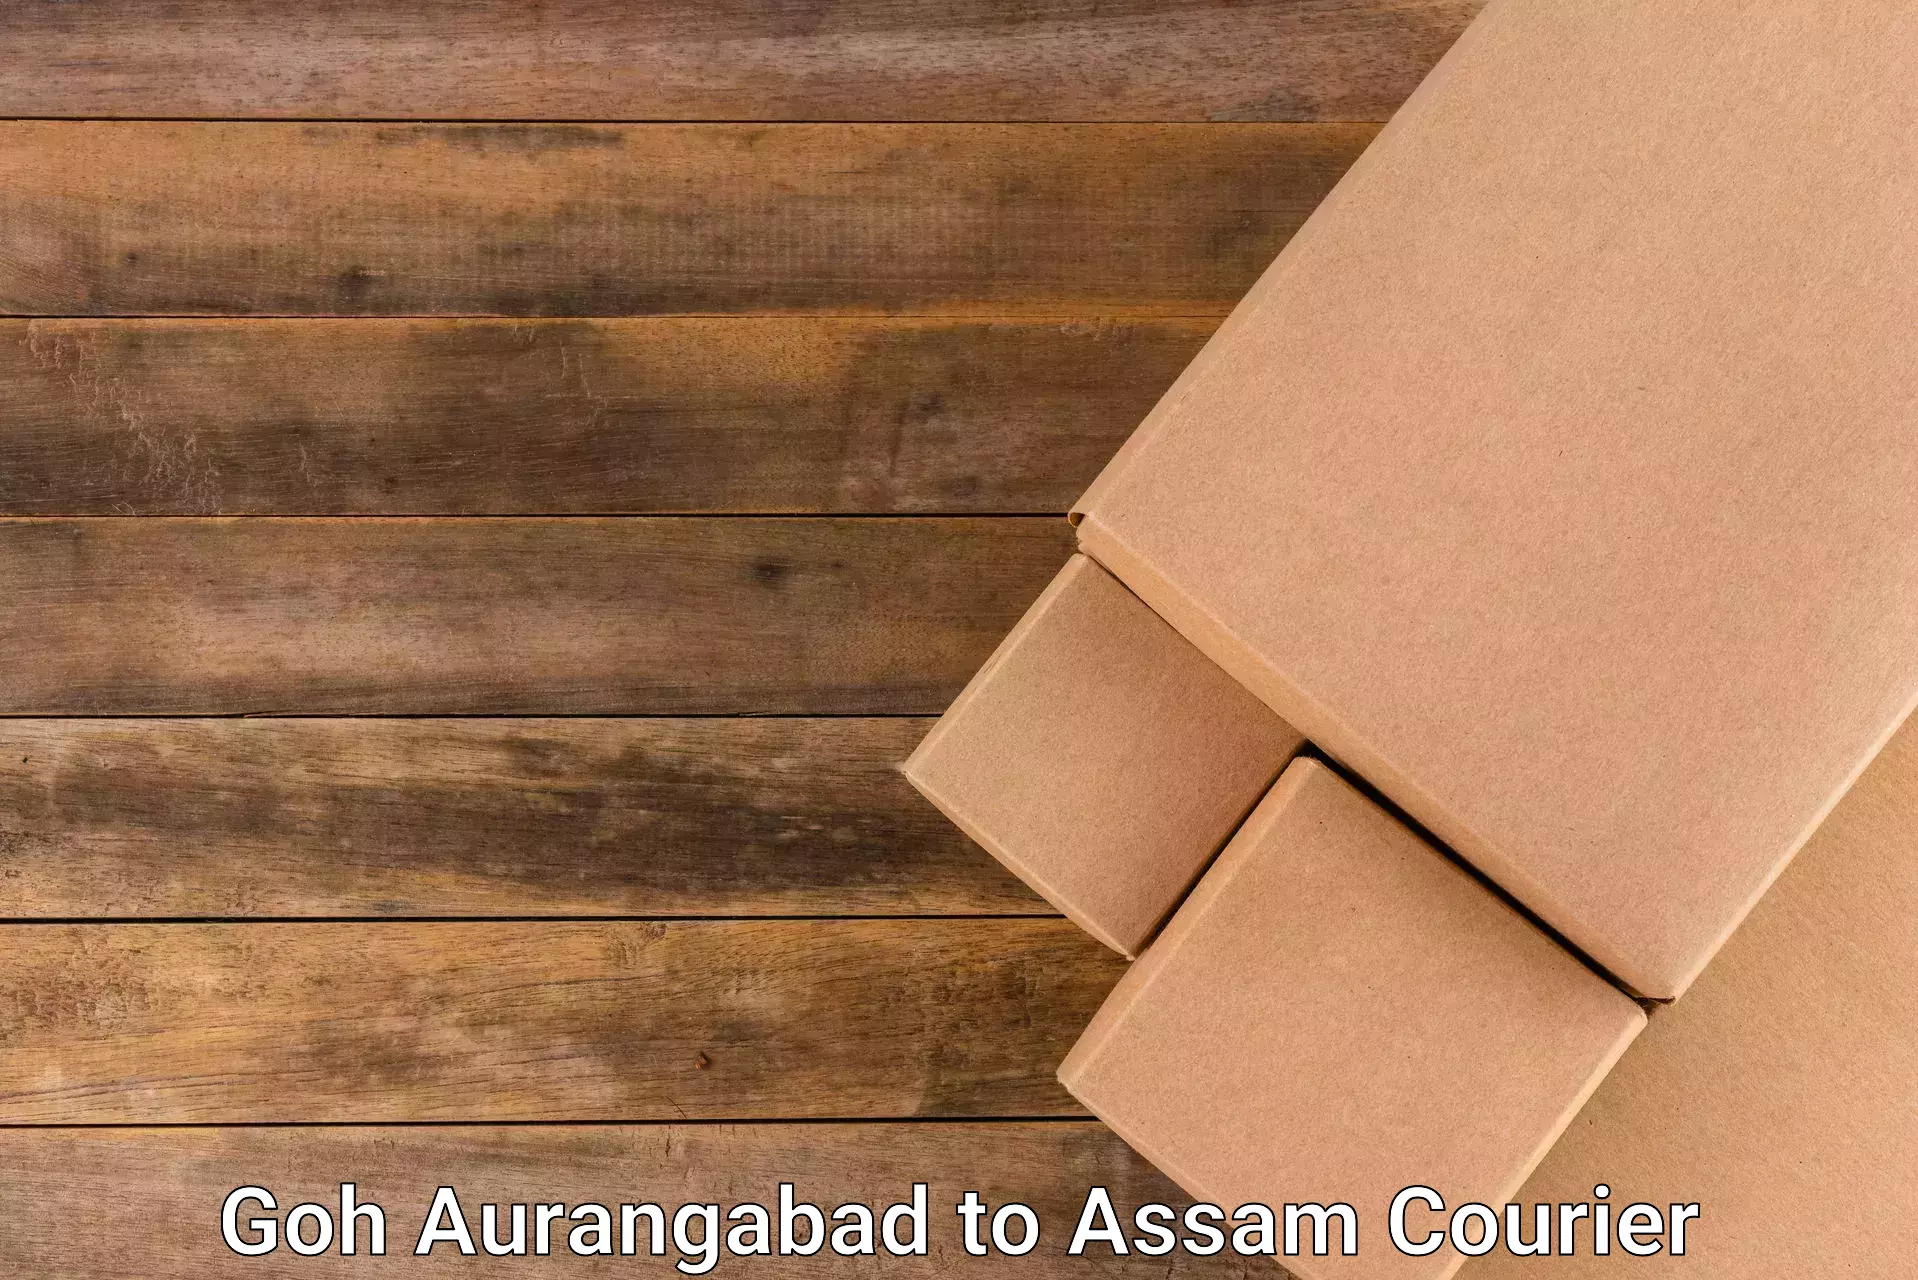 Global delivery options Goh Aurangabad to Badarpur Karimganj